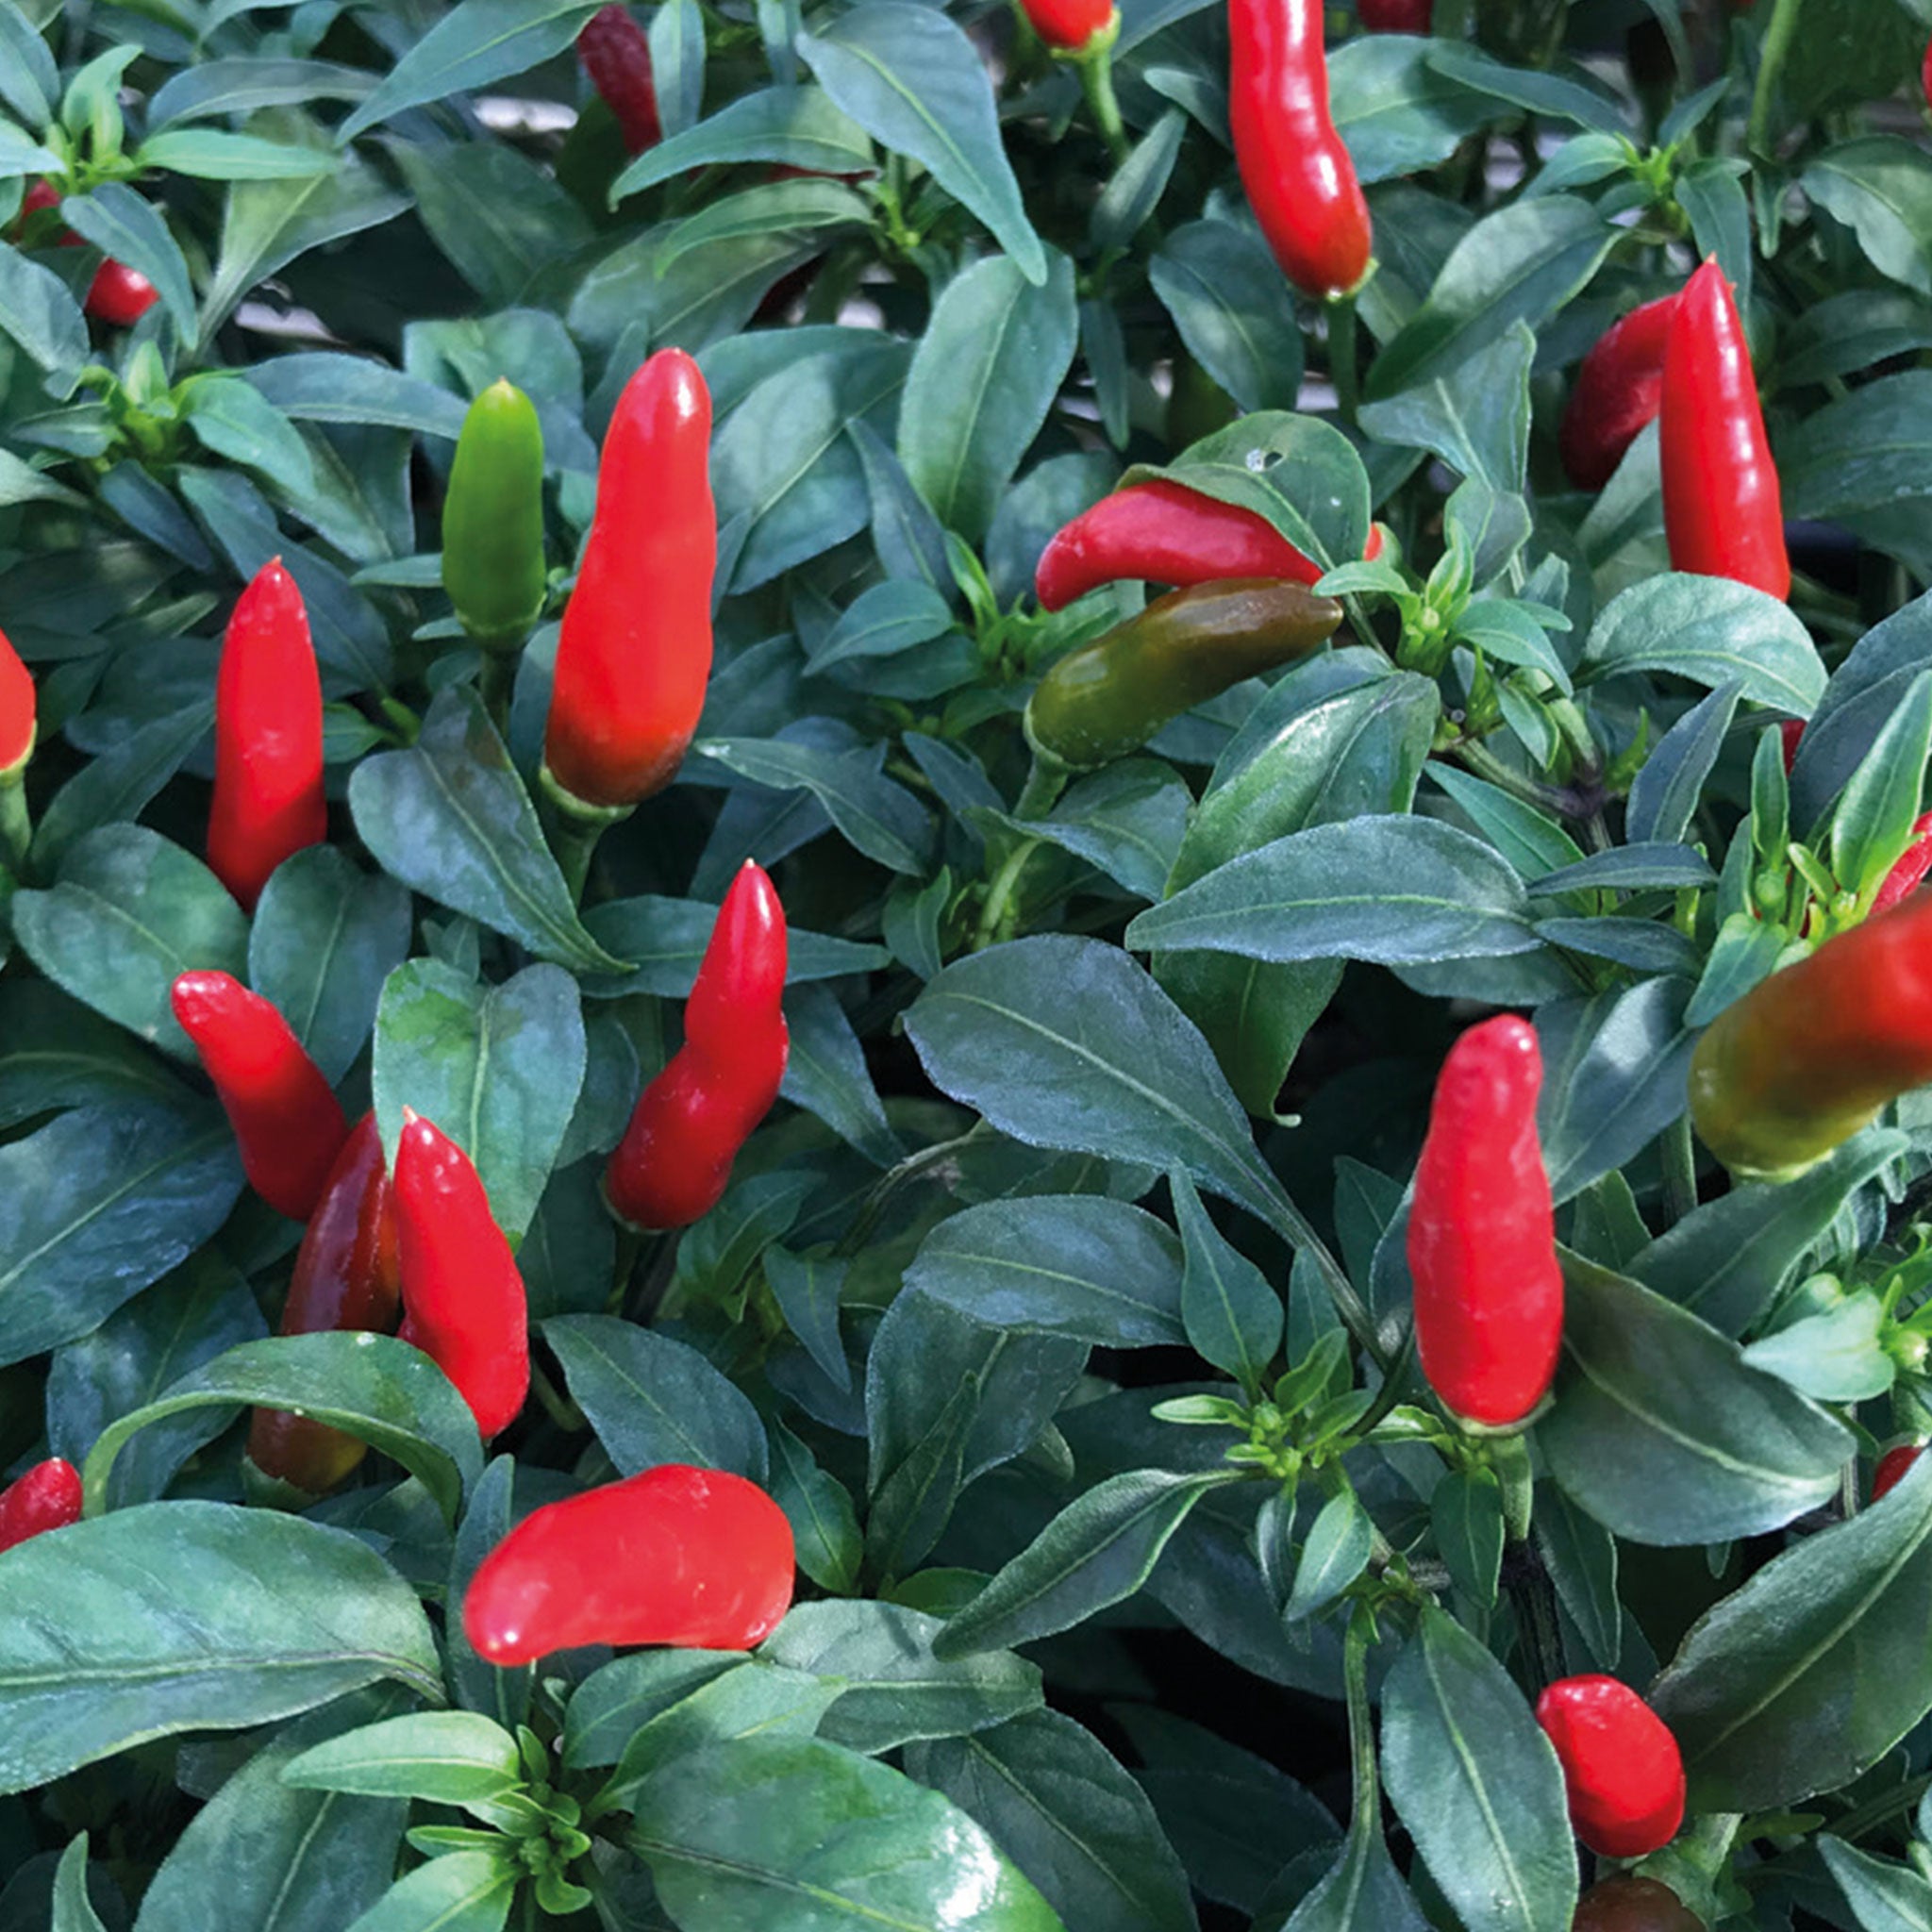 Unwins Chilli Pepper Quick Fire Seeds